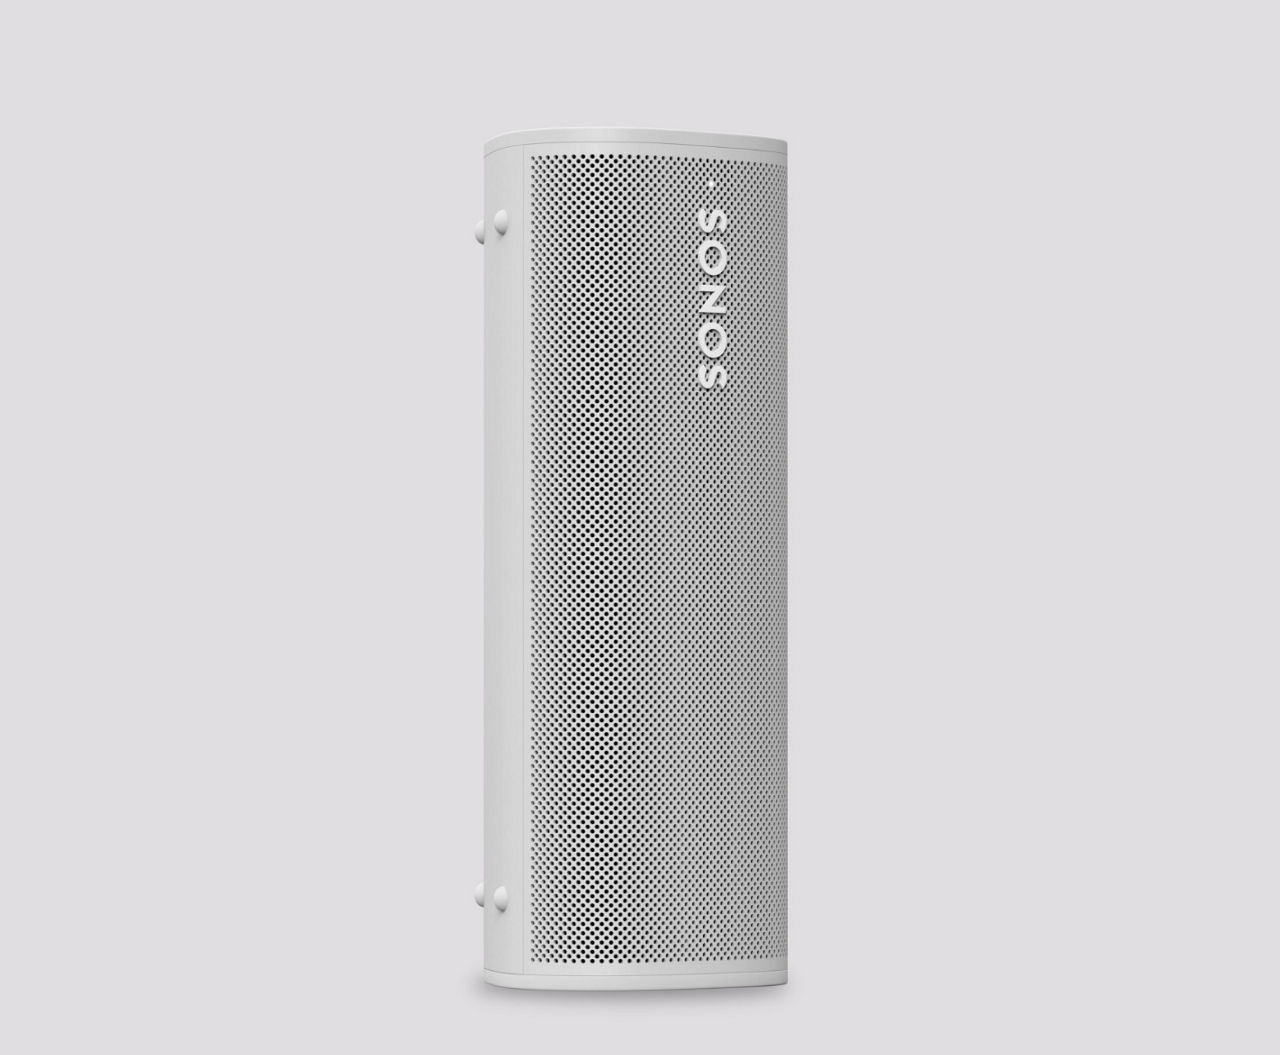 Roam Portable Waterproof Smart Speaker